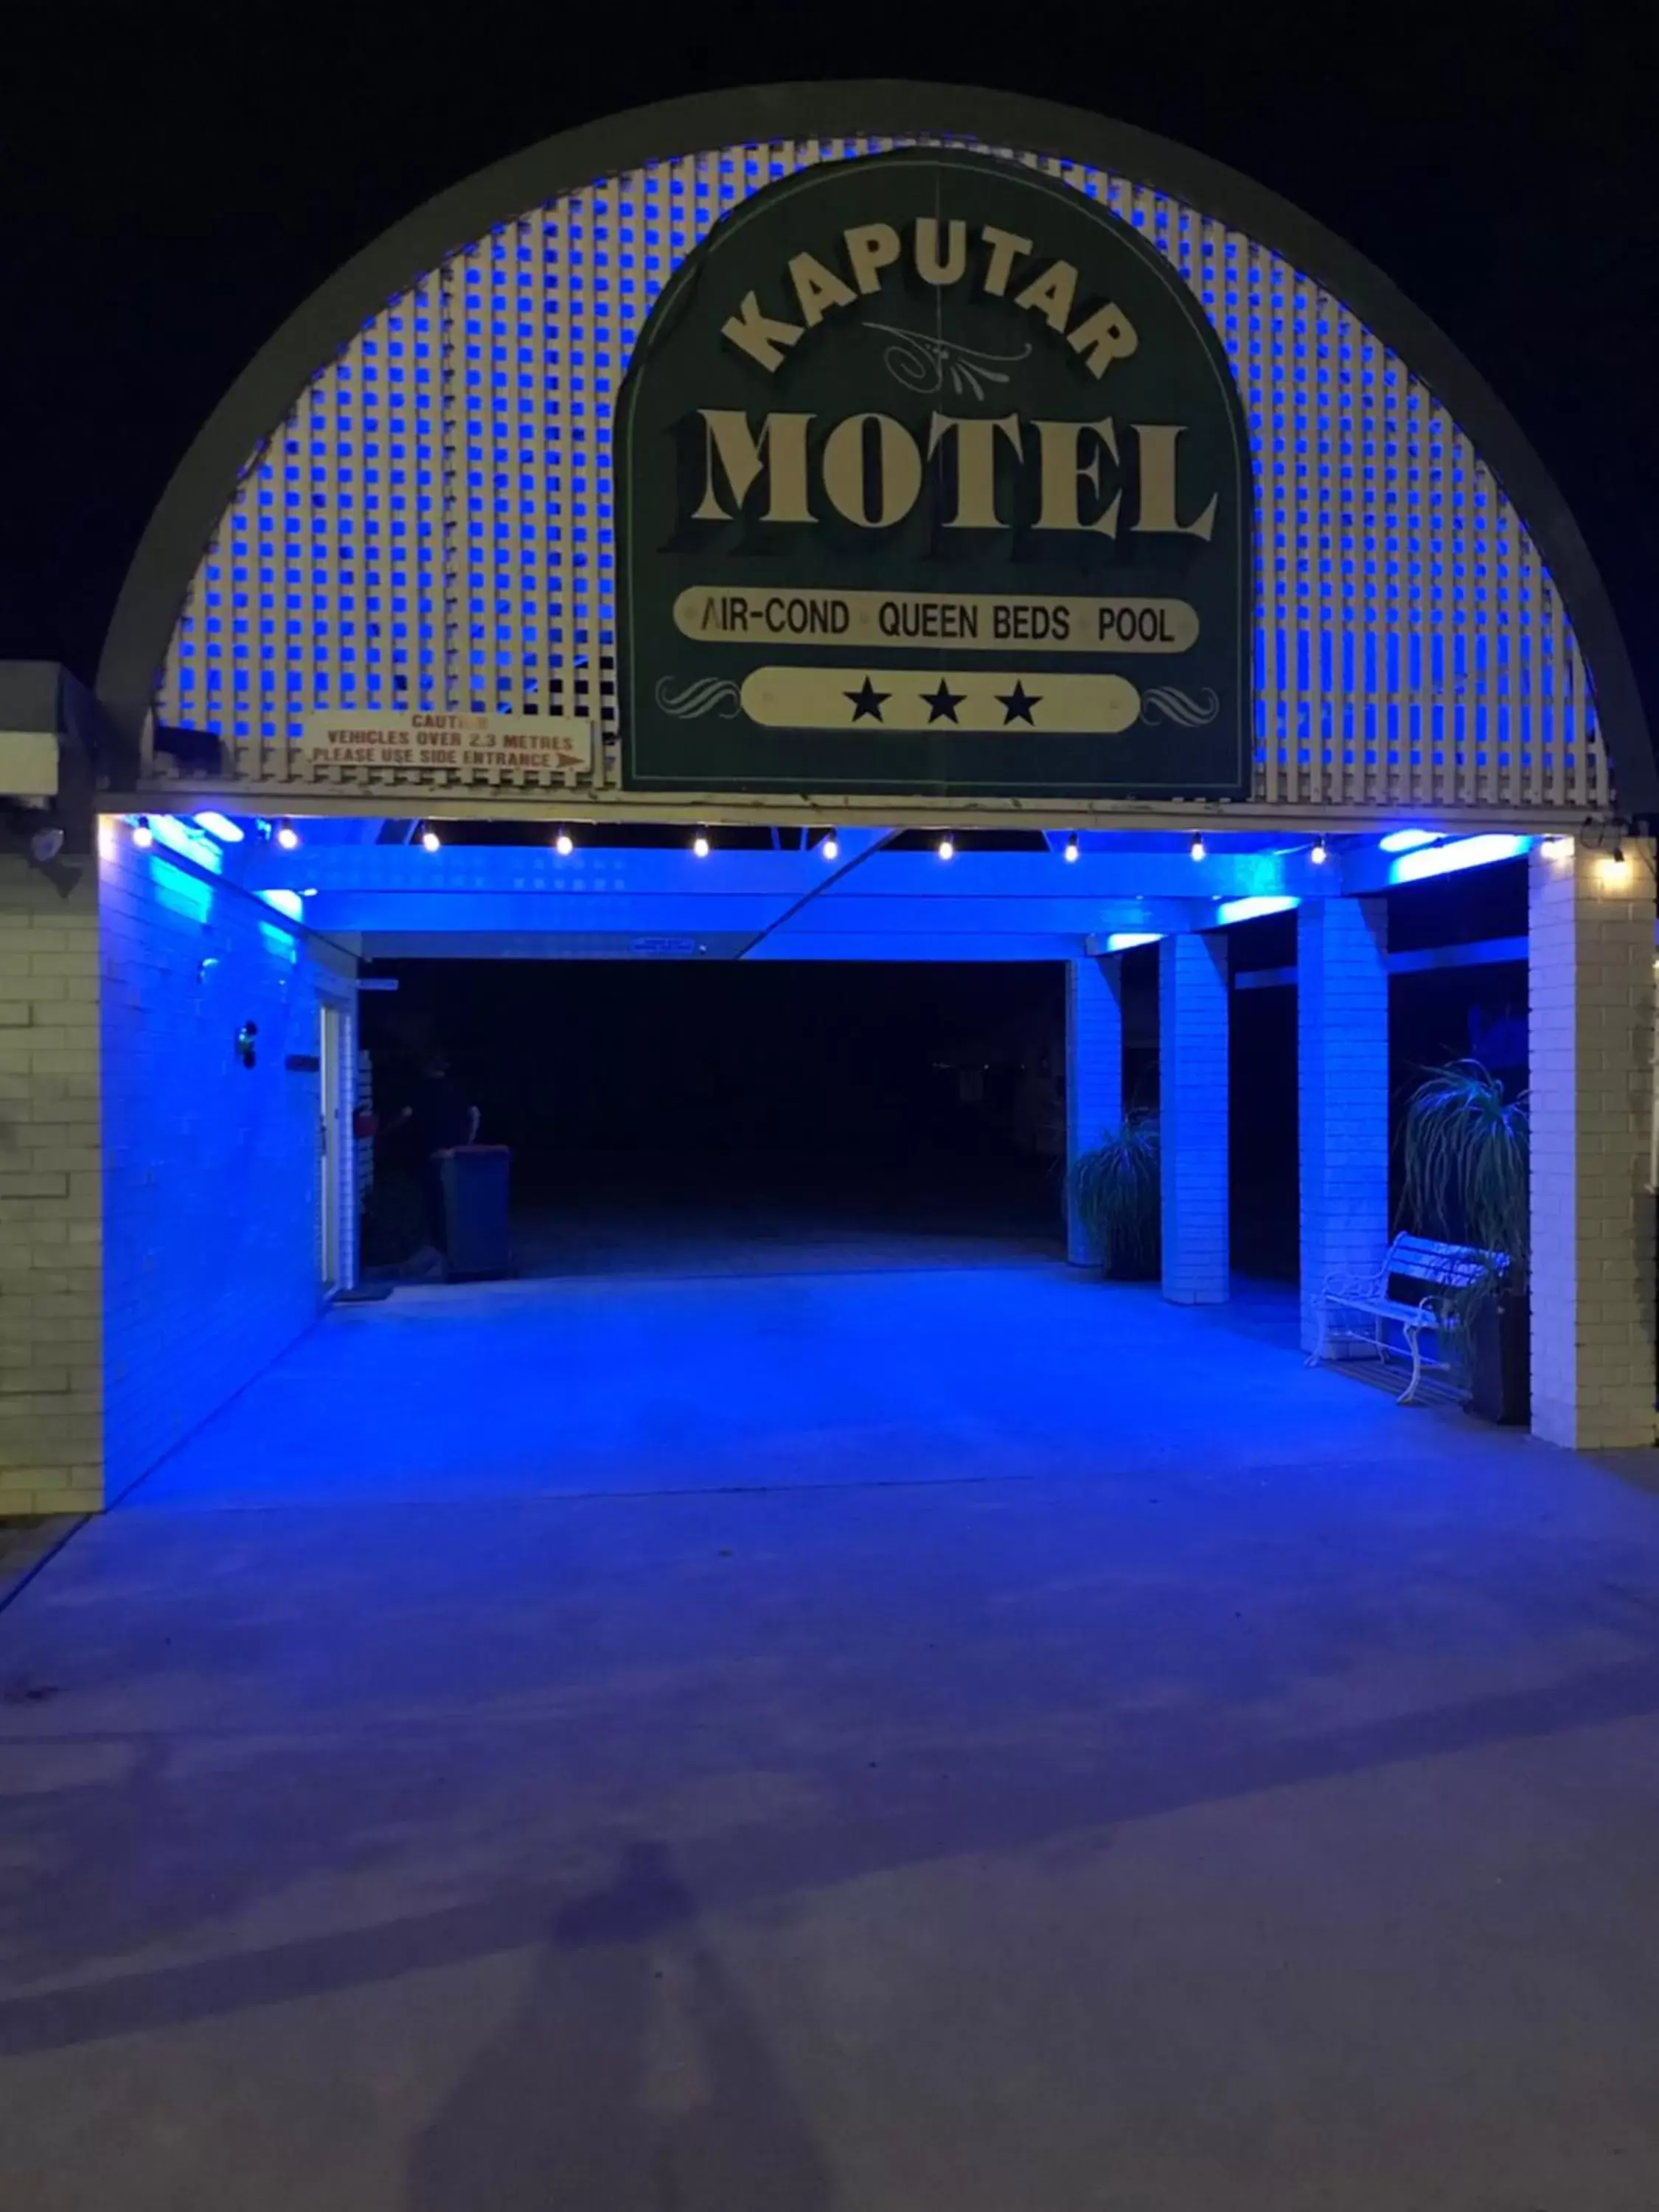 Facade/entrance in Kaputar Motel